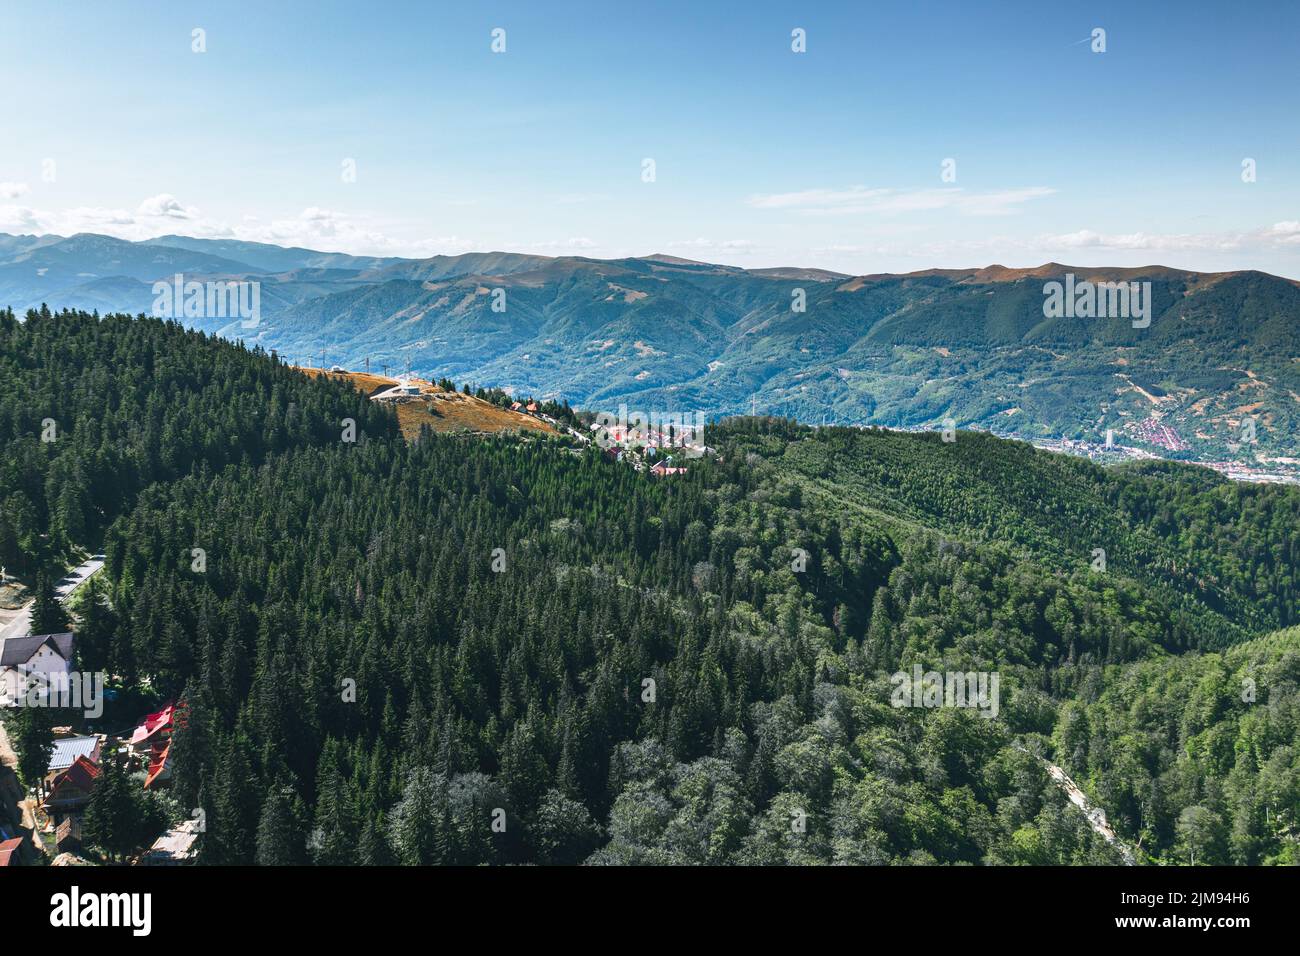 Luftlandschaftsansicht von hohen Gipfeln mit dunklen Kiefernwäldern in wilden Bergen.schöne Aussicht vom Wanderweg in den Karpaten. Stockfoto